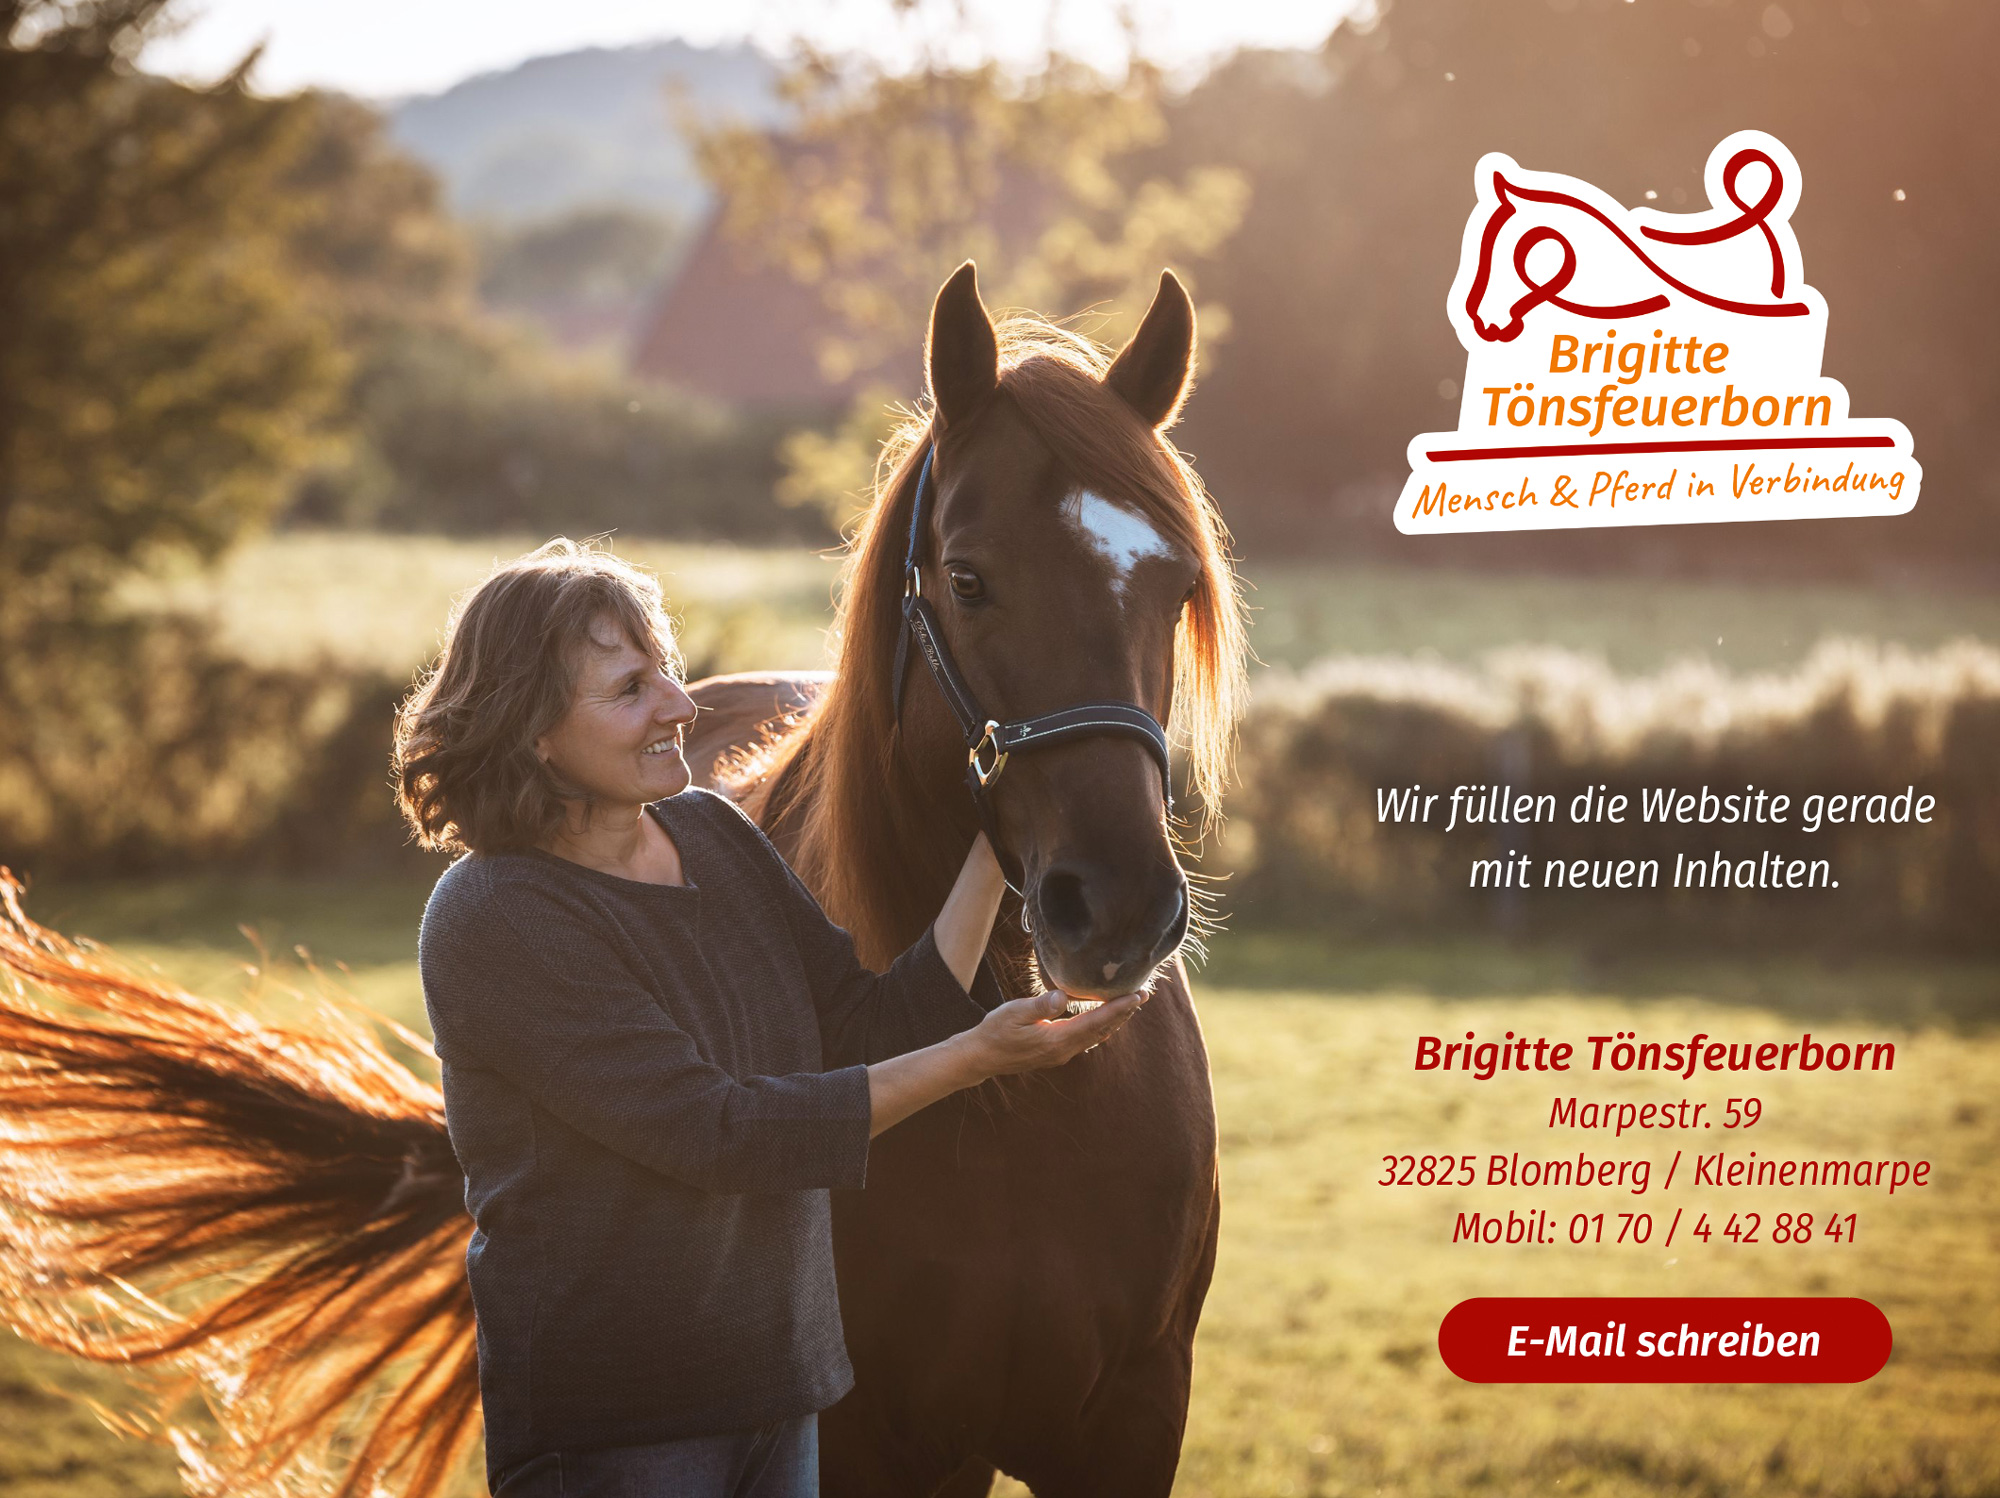 Hier entsteht die neue Website von Brigitte Tönsfeuerborn | Mensch & Pferd in Verbindung. Telefonnummer 0170 / 4428841